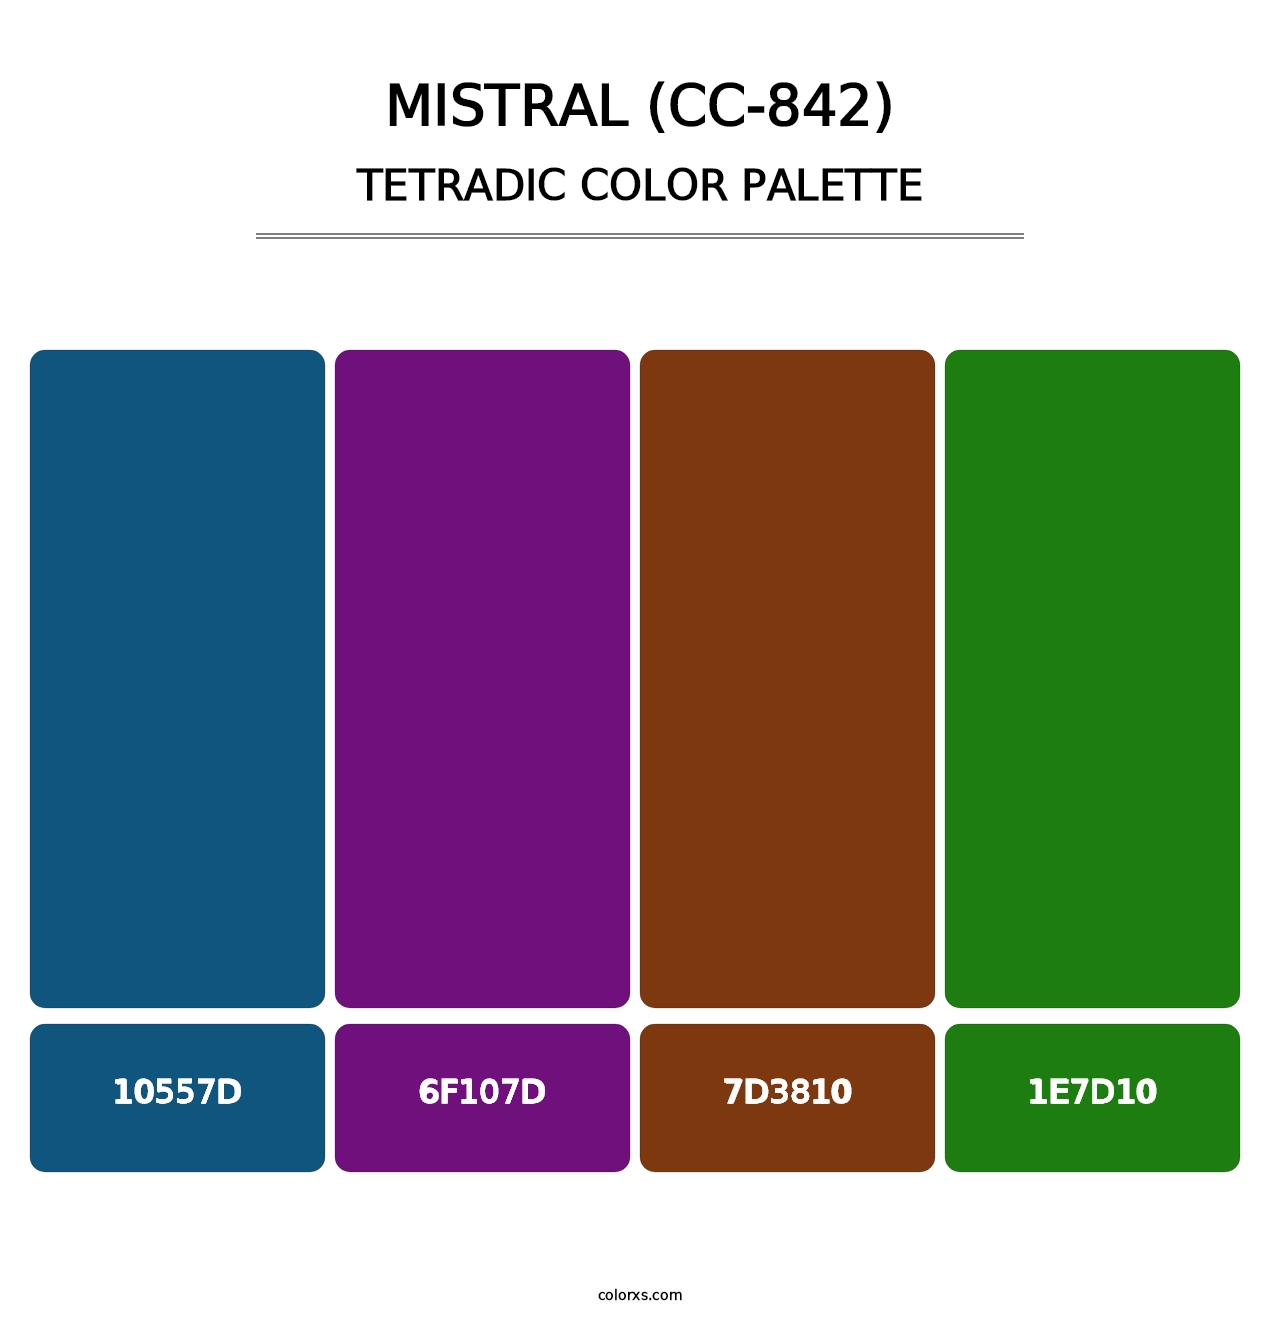 Mistral (CC-842) - Tetradic Color Palette